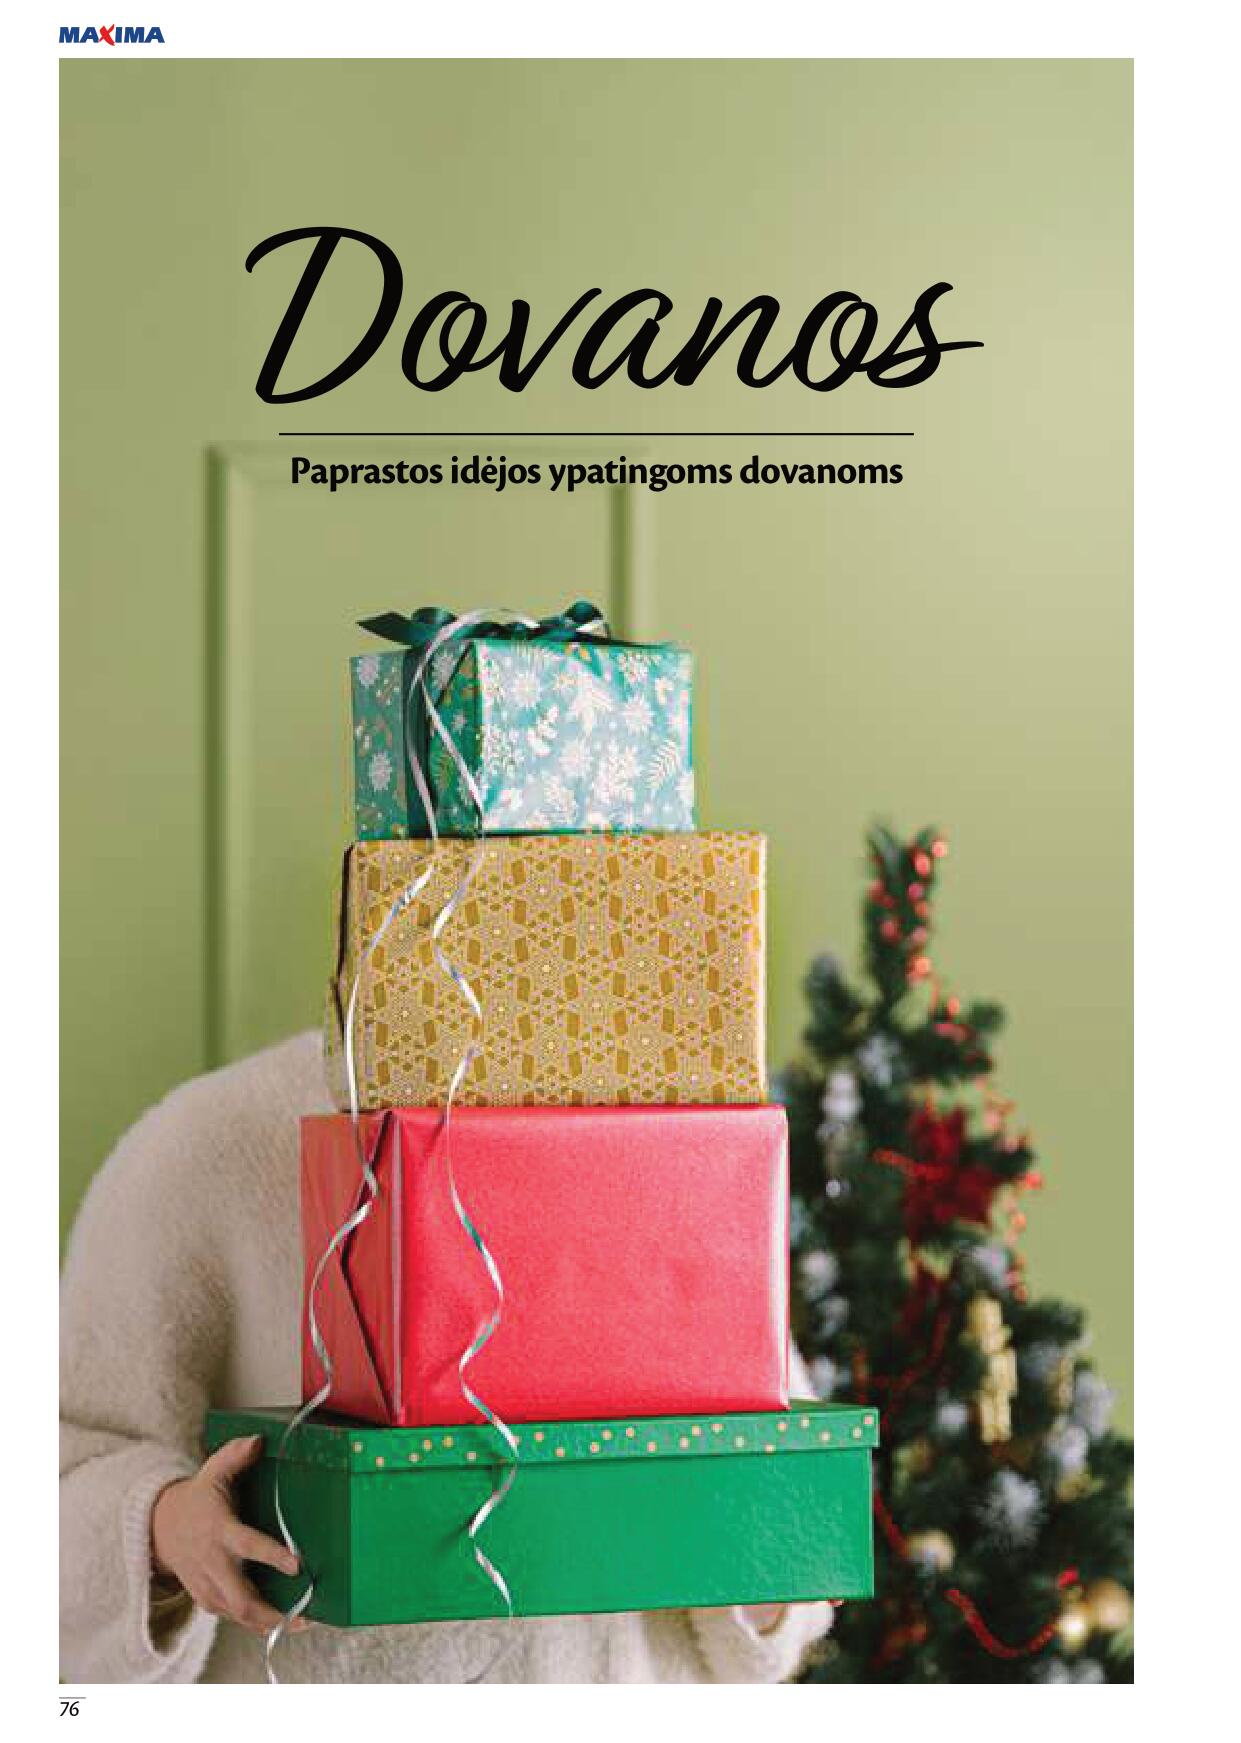 MAXIMA kainų leidinys „Kalėdų Kalėdos“ 2022.11.17 - 2023.01.04